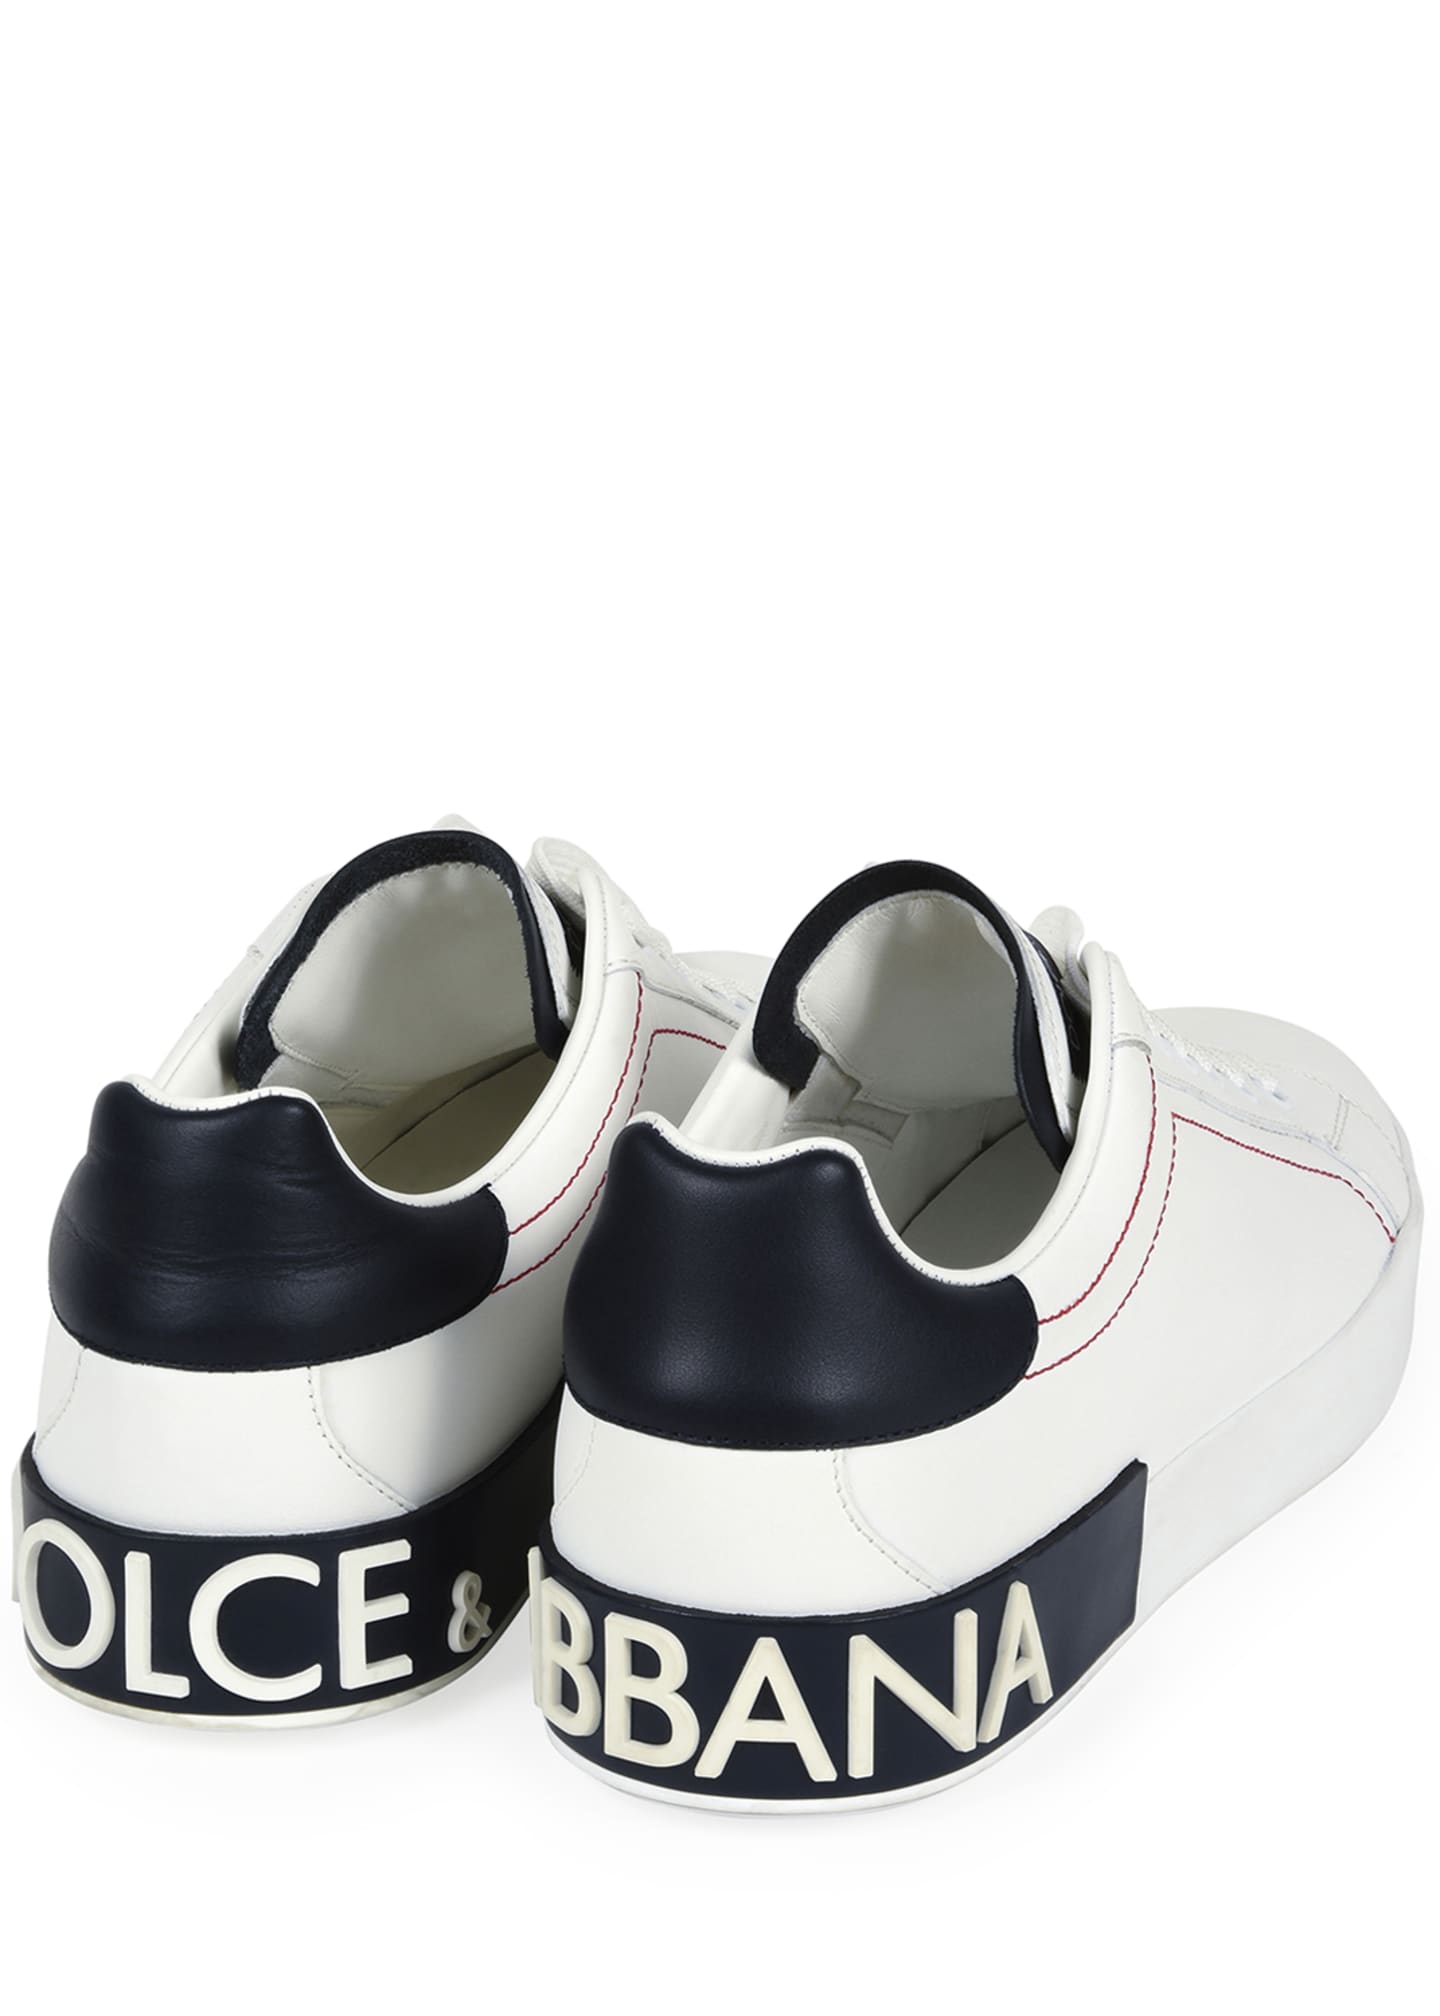 Dolce & Gabbana Men's Portofino Two-Tone Leather Sneakers - Bergdorf ...